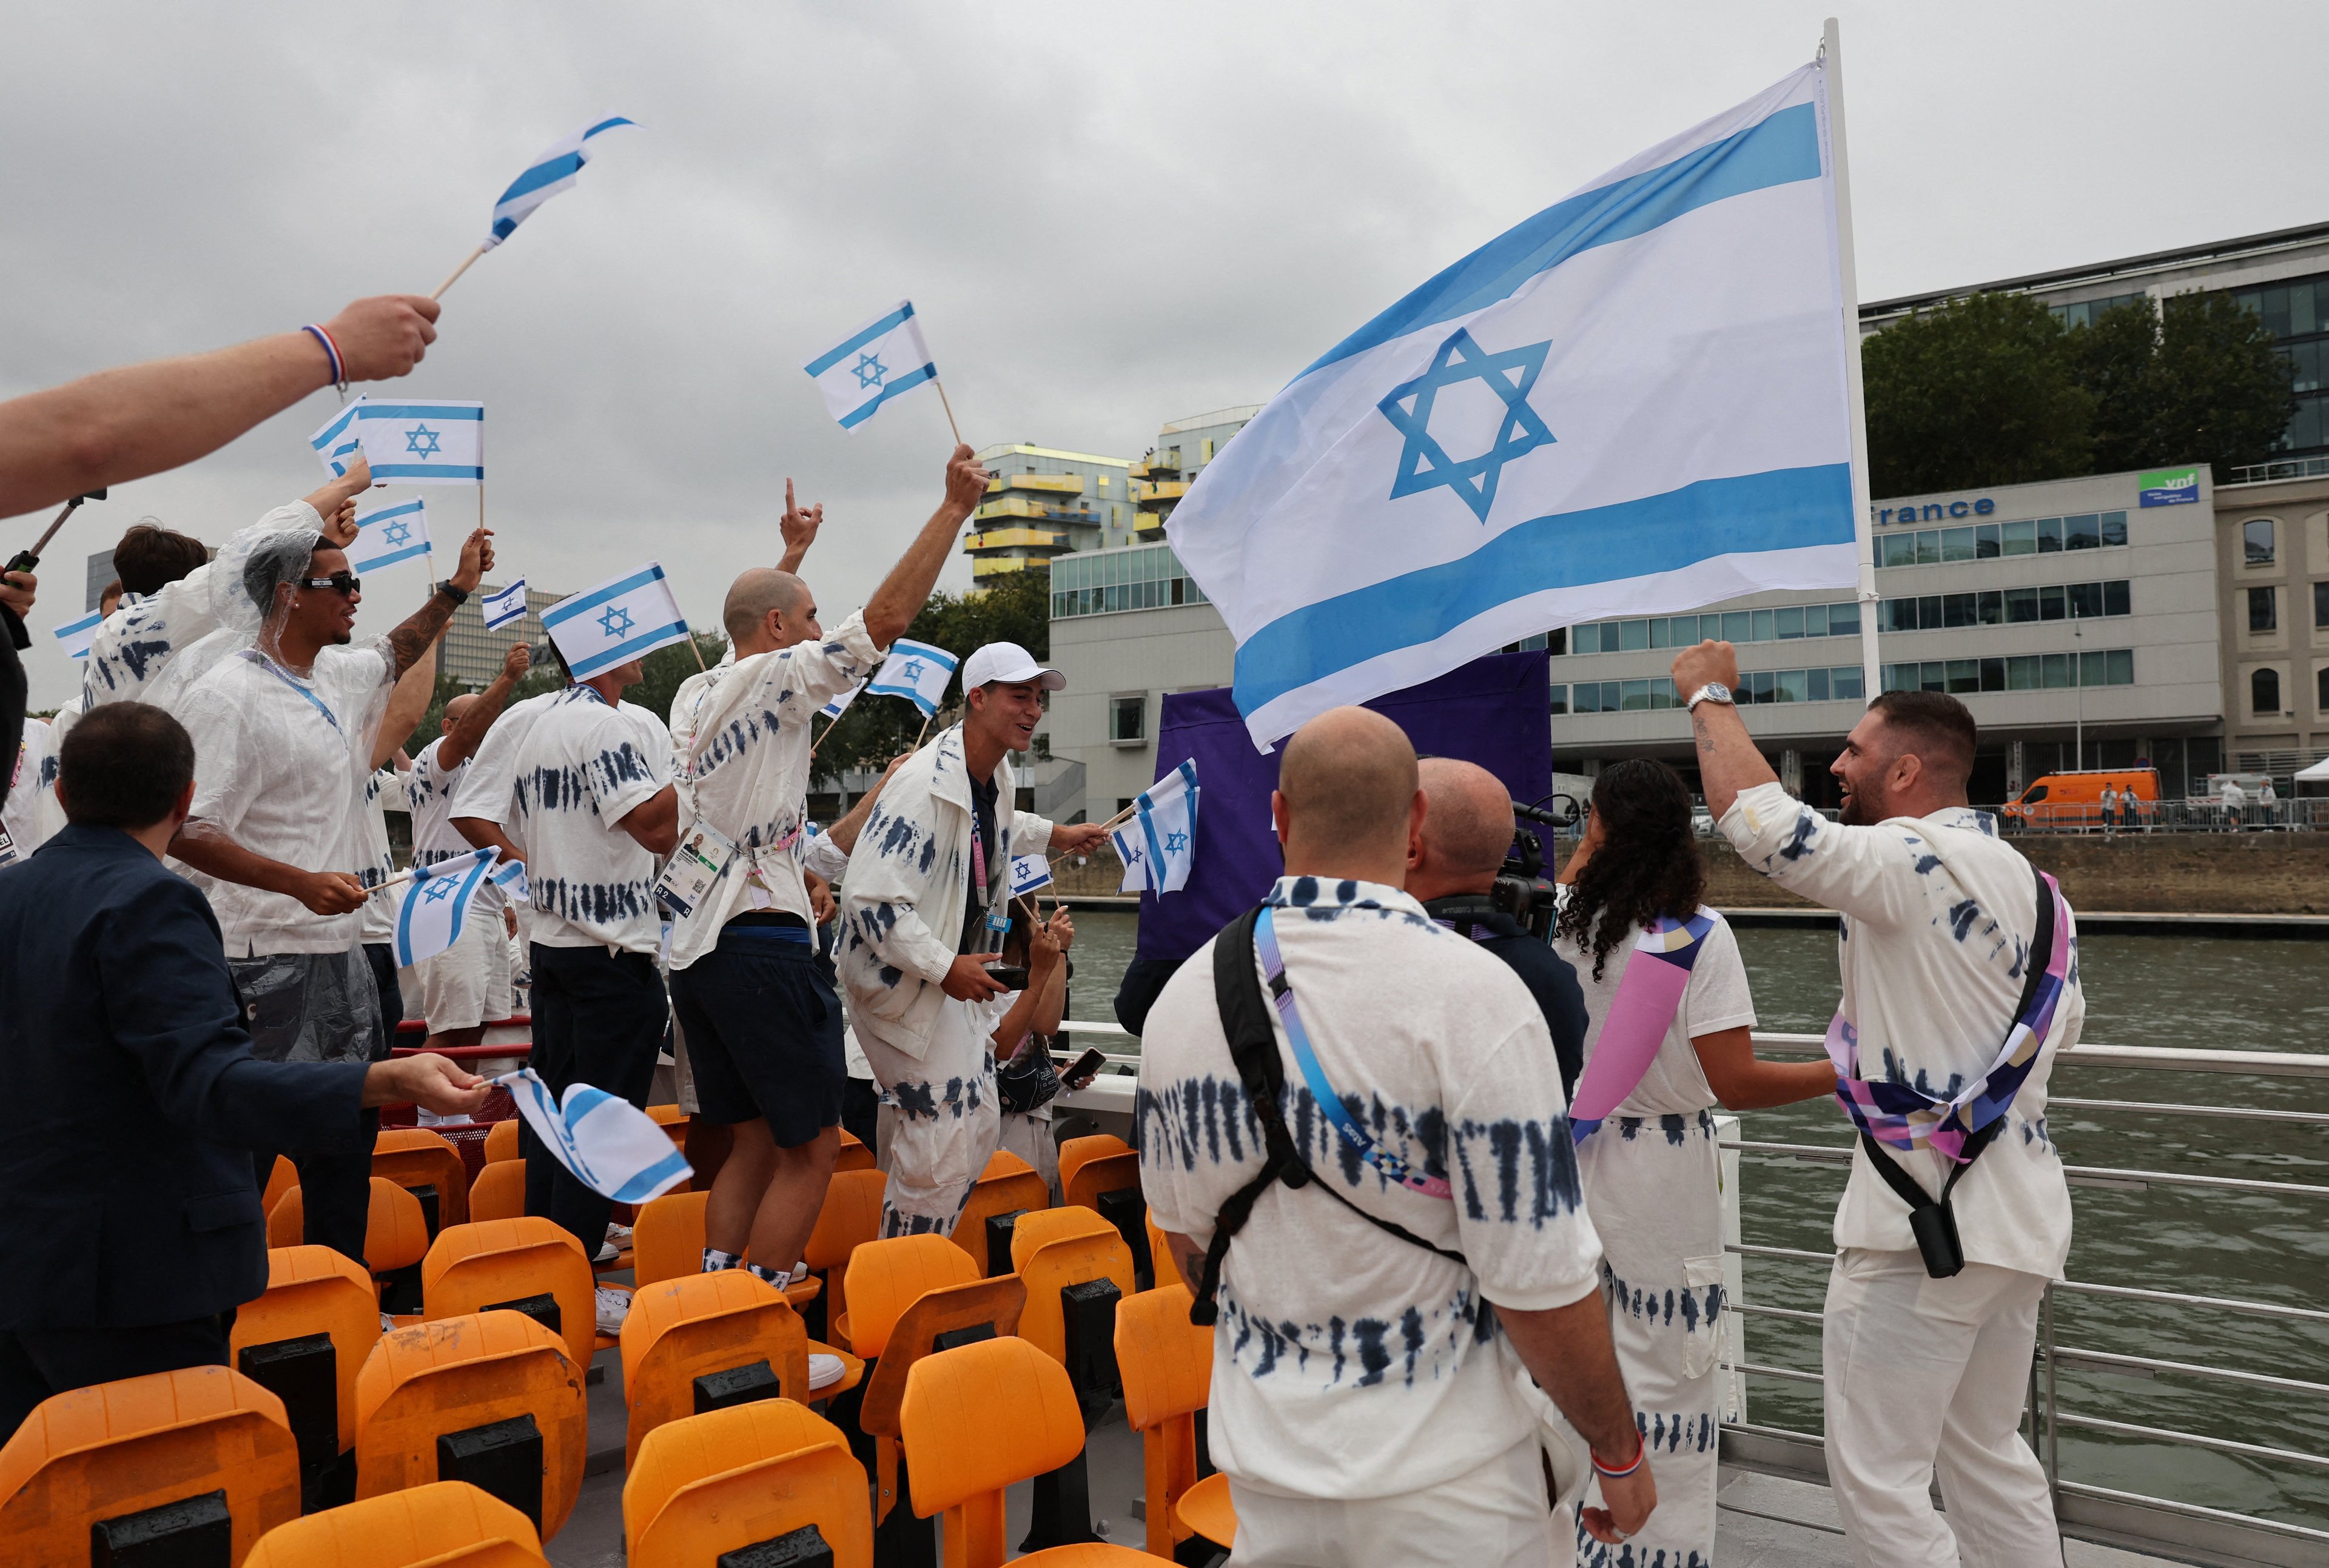 Atletas de Israel, incluindo os porta-bandeiras Andrea Murez e Peter Paltchik, são vistos a bordo de um barco no desfile flutuante no rio Sena durante a cerimônia de abertura